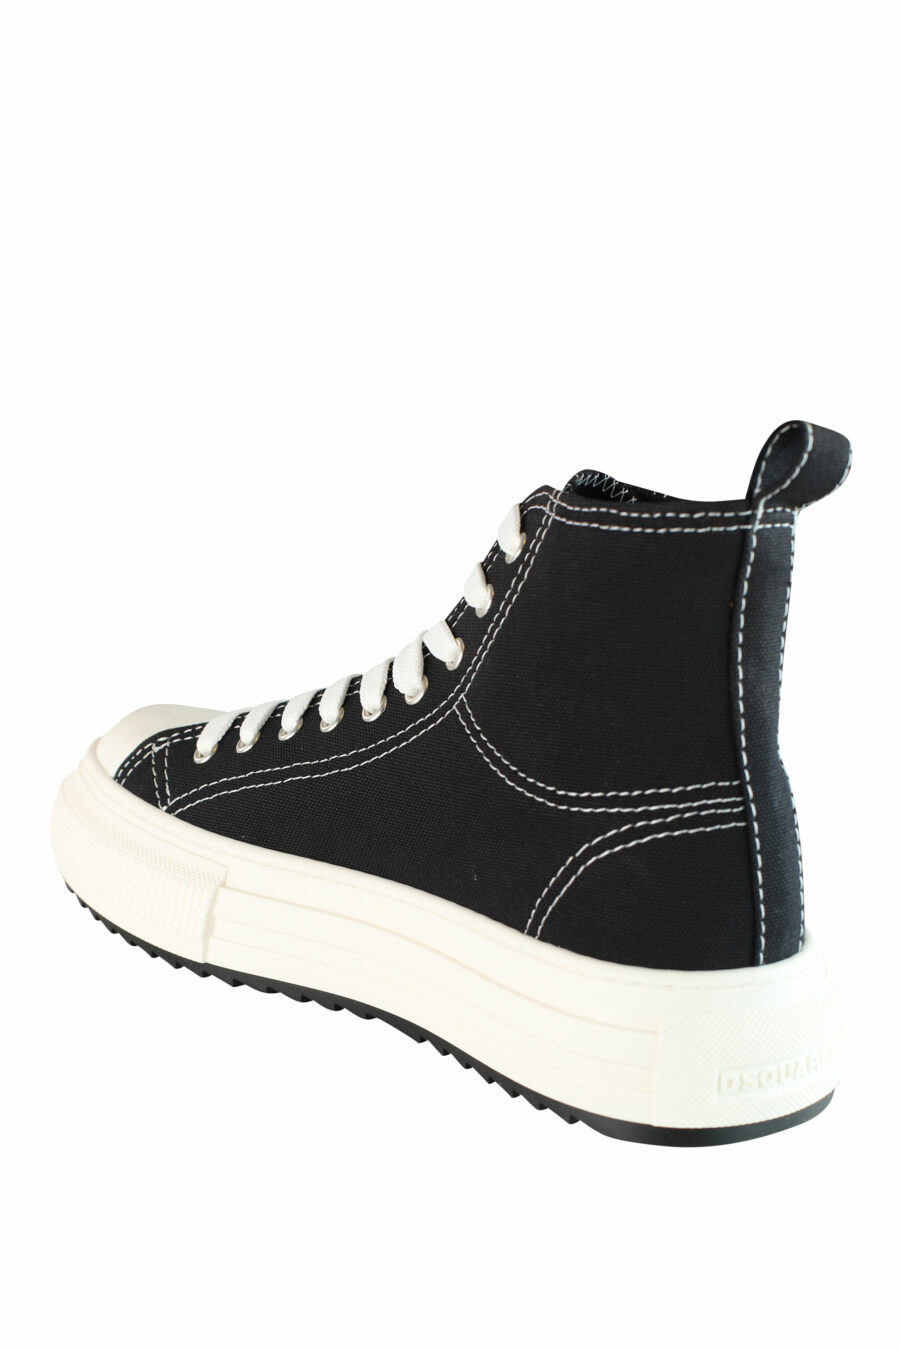 Zapatillas negras estilo botin con plataforma y logo mini - IMG 1423